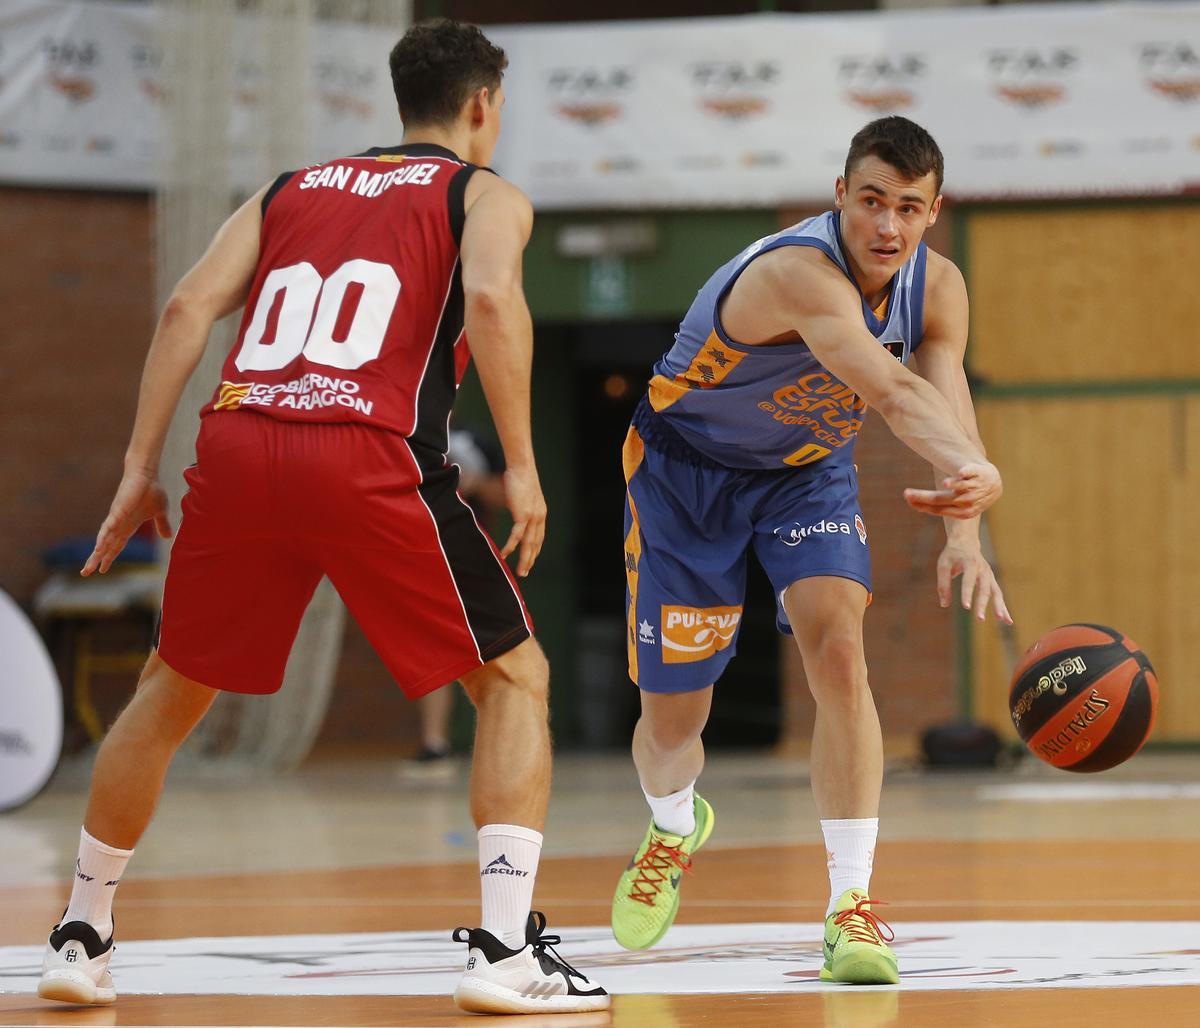 Nenad Dimitrijevic convirtió seis puntos en cinco minutos con un 100 % de aciertos